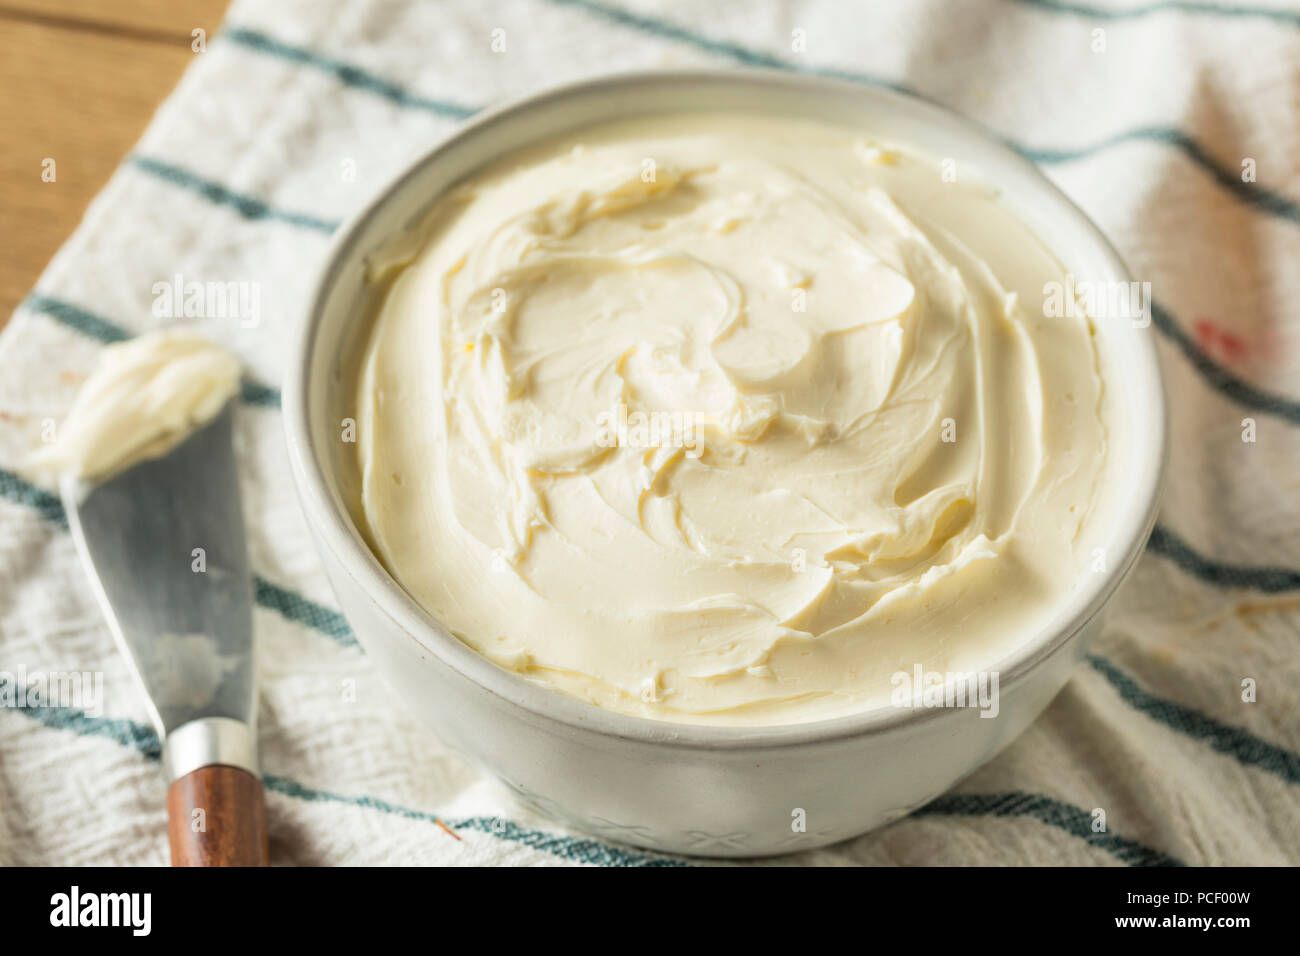 Crema de queso bajo en grasa caseros esparcidos en un tazón Foto de stock